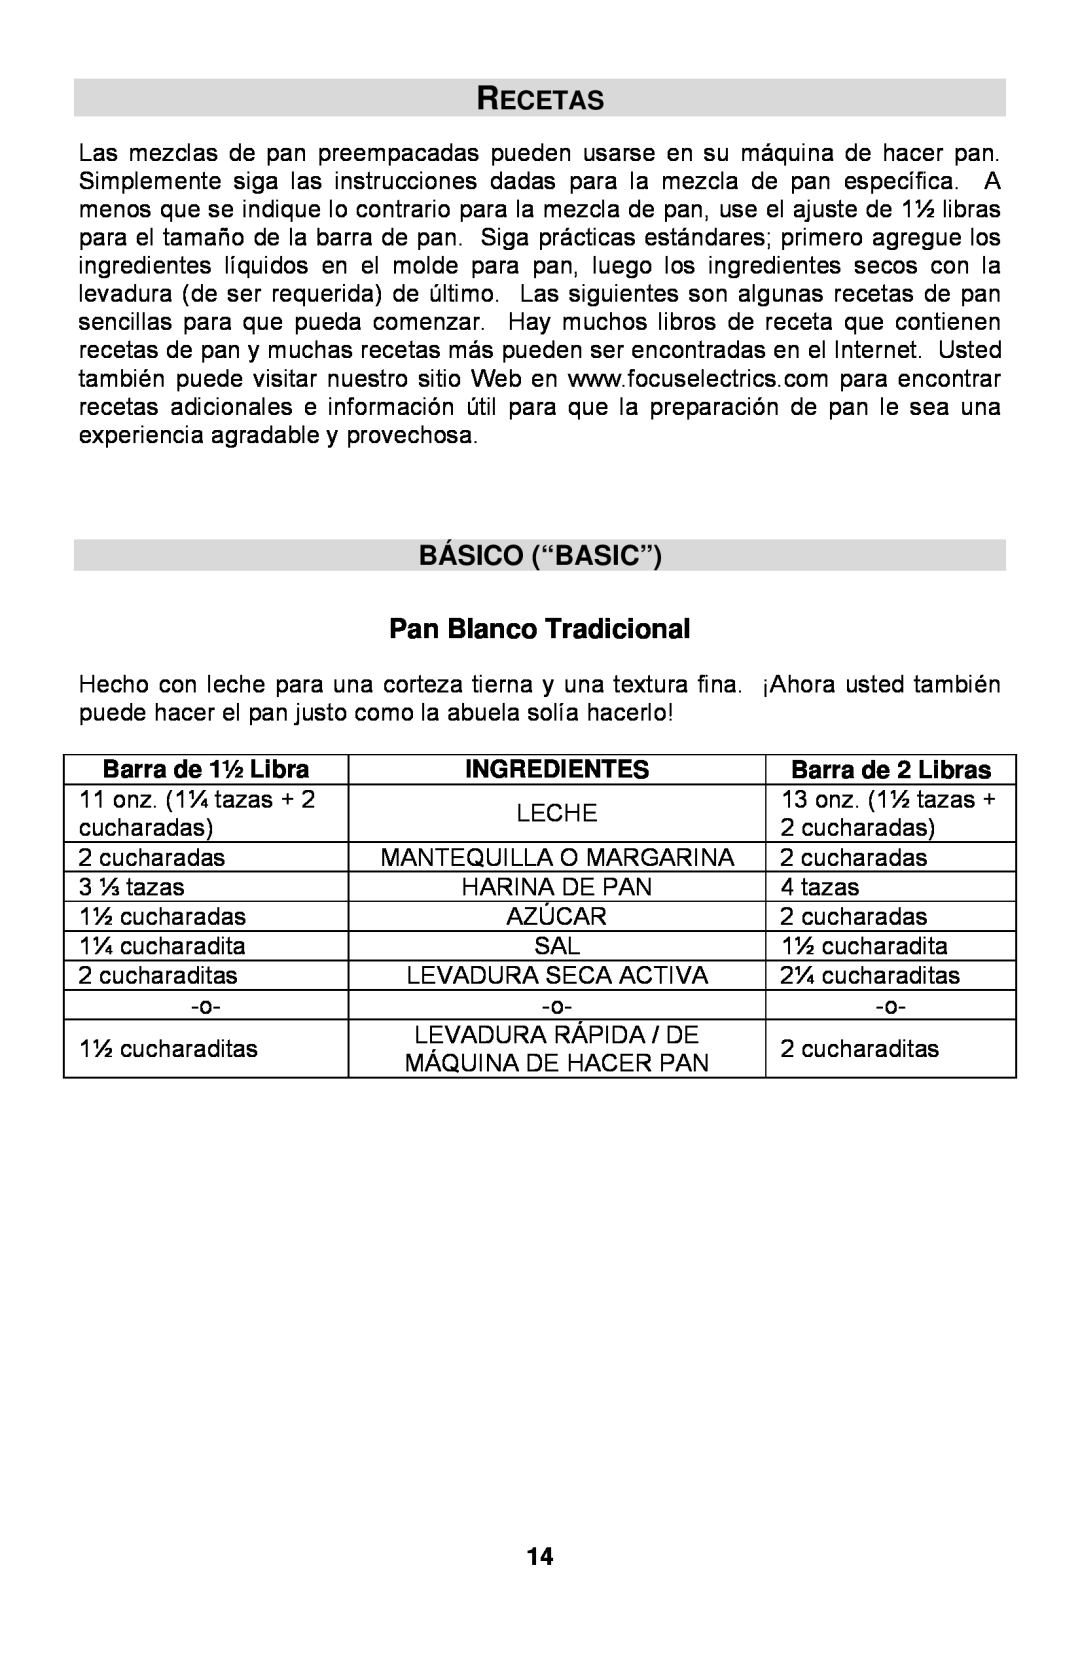 West Bend L5762 Recetas, BÁSICO “BASIC” Pan Blanco Tradicional, Barra de 1½ Libra, Ingredientes, Barra de 2 Libras 